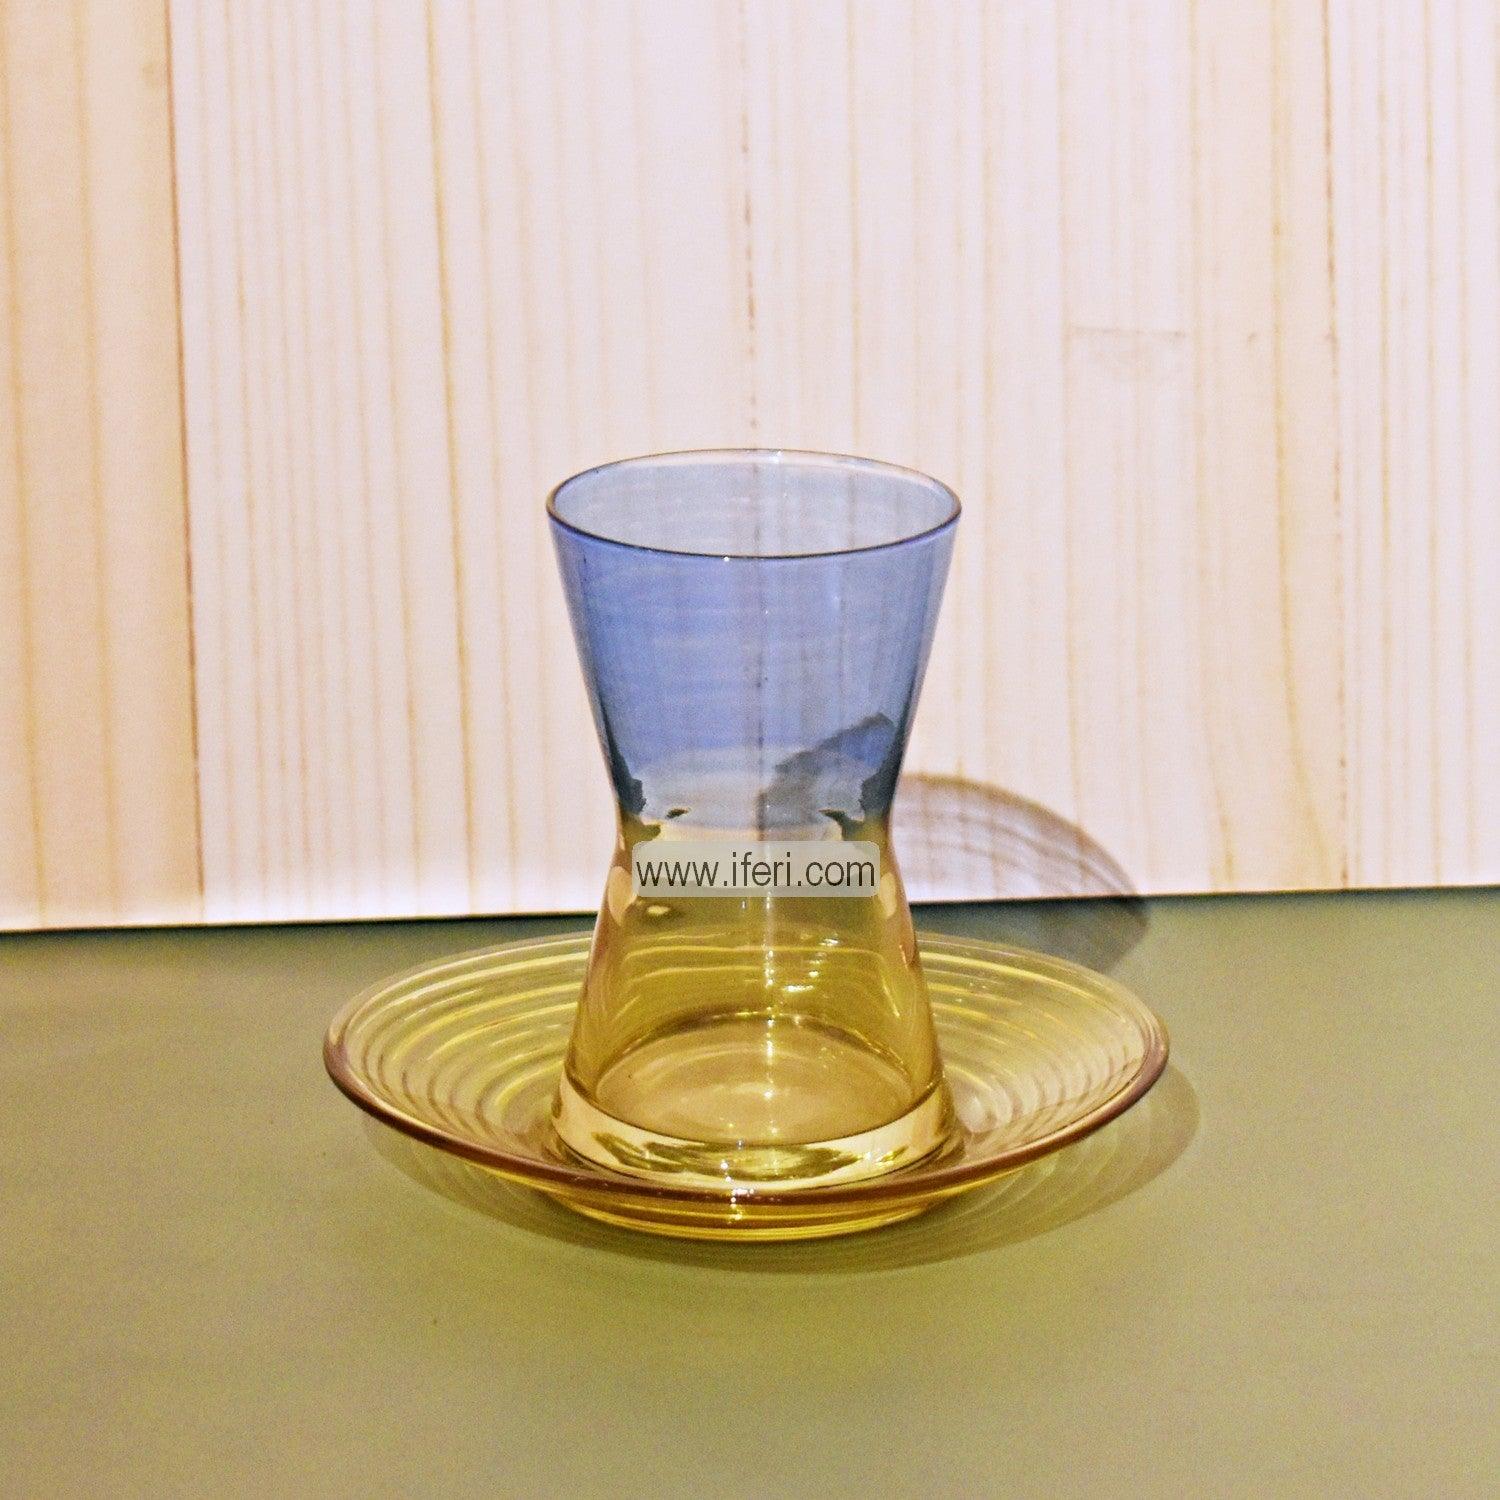 12 Pcs Exclusive Glass Turkish Tea Cup & Saucer Set GA2001 Price in Bangladesh - iferi.com